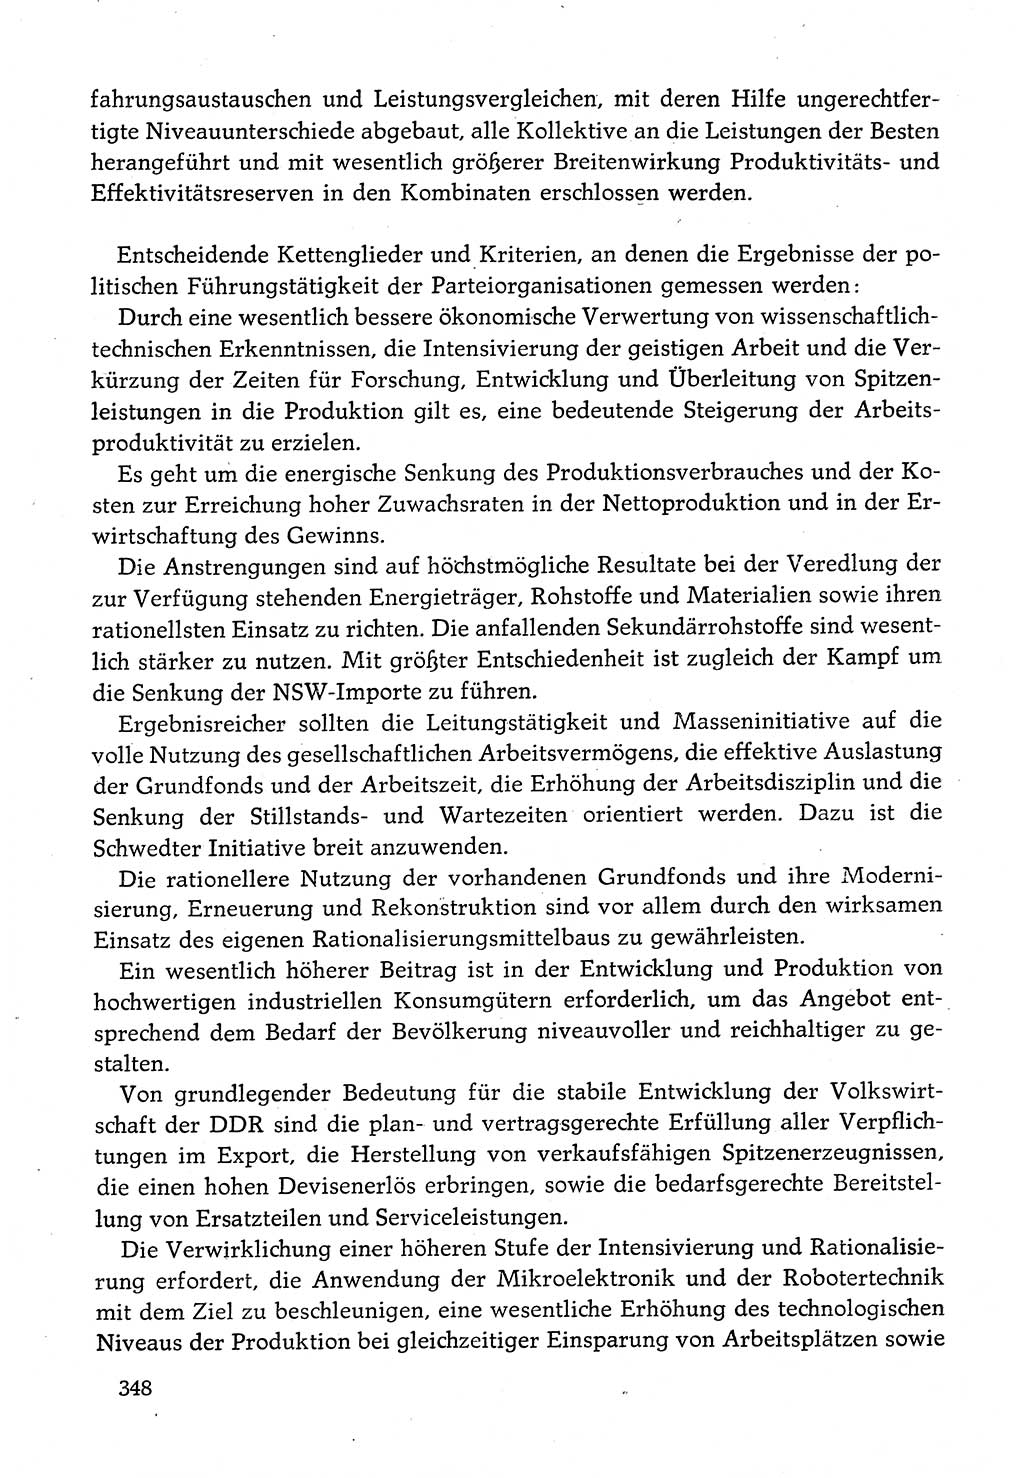 Dokumente der Sozialistischen Einheitspartei Deutschlands (SED) [Deutsche Demokratische Republik (DDR)] 1982-1983, Seite 348 (Dok. SED DDR 1982-1983, S. 348)